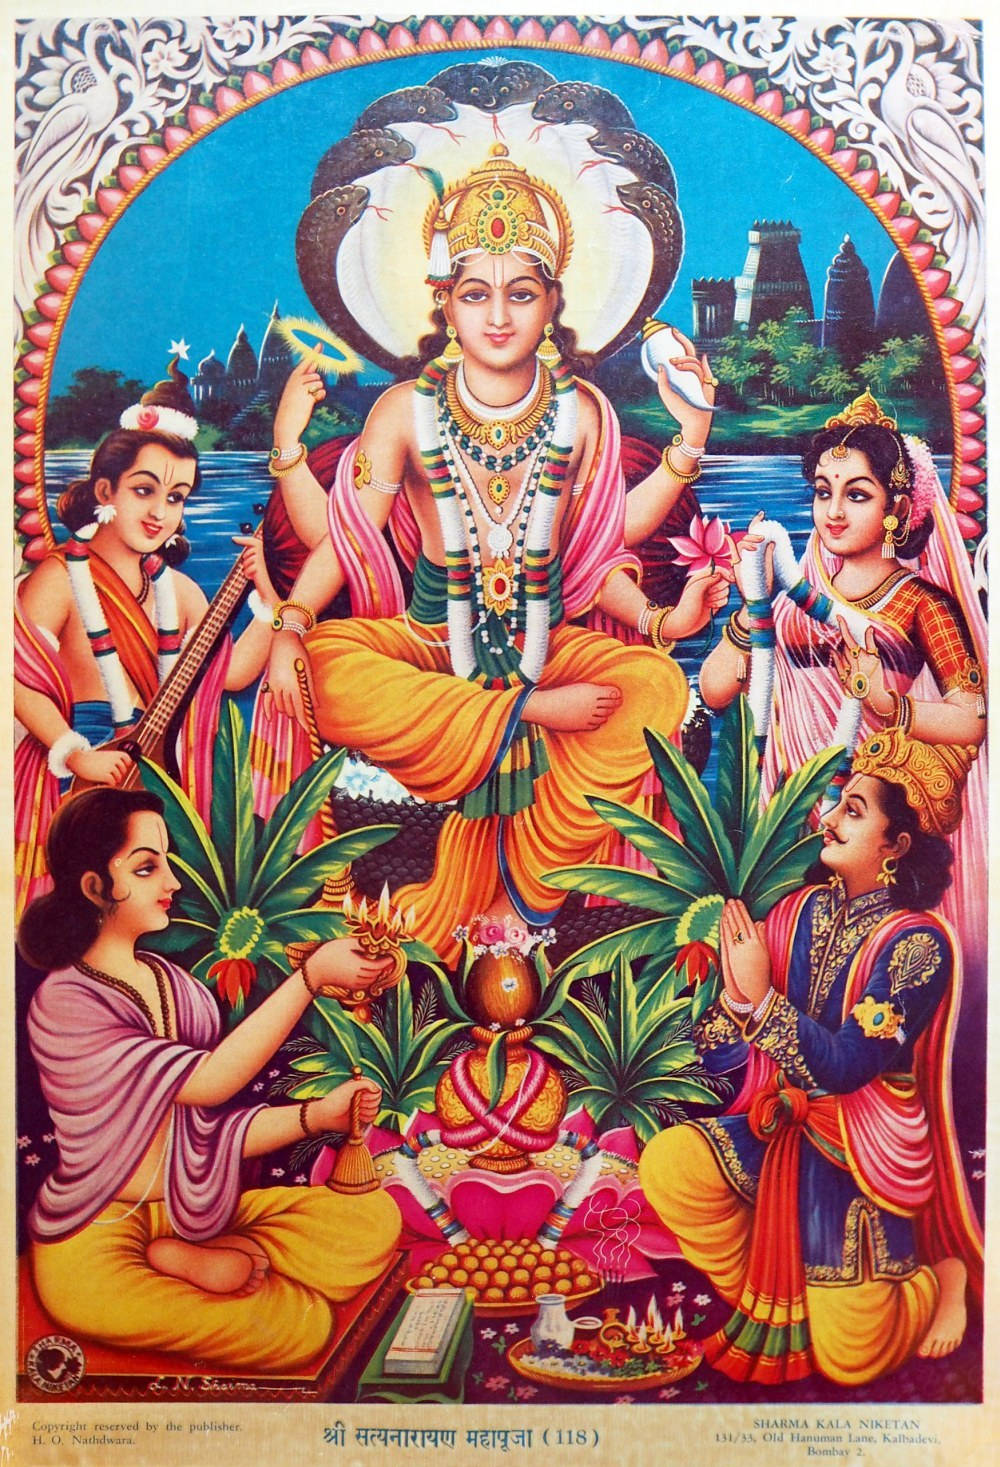 Download Satyanarayana Swamy Near A Body Of Water Wallpaper ...